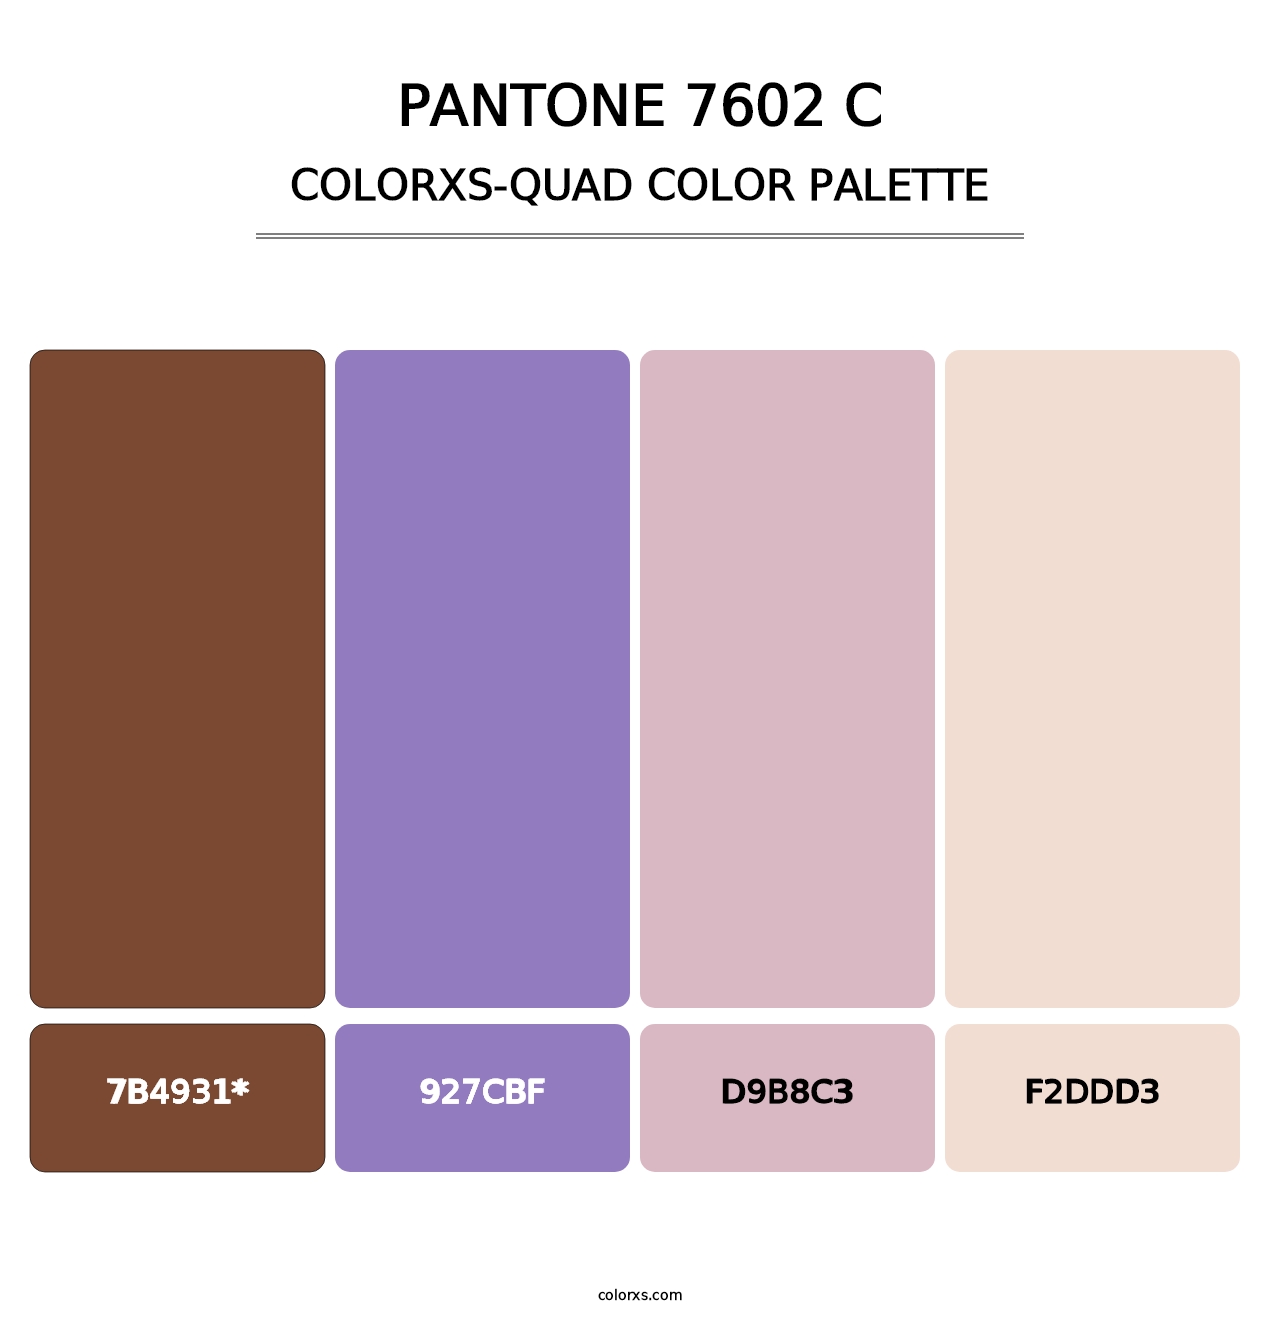 PANTONE 7602 C - Colorxs Quad Palette